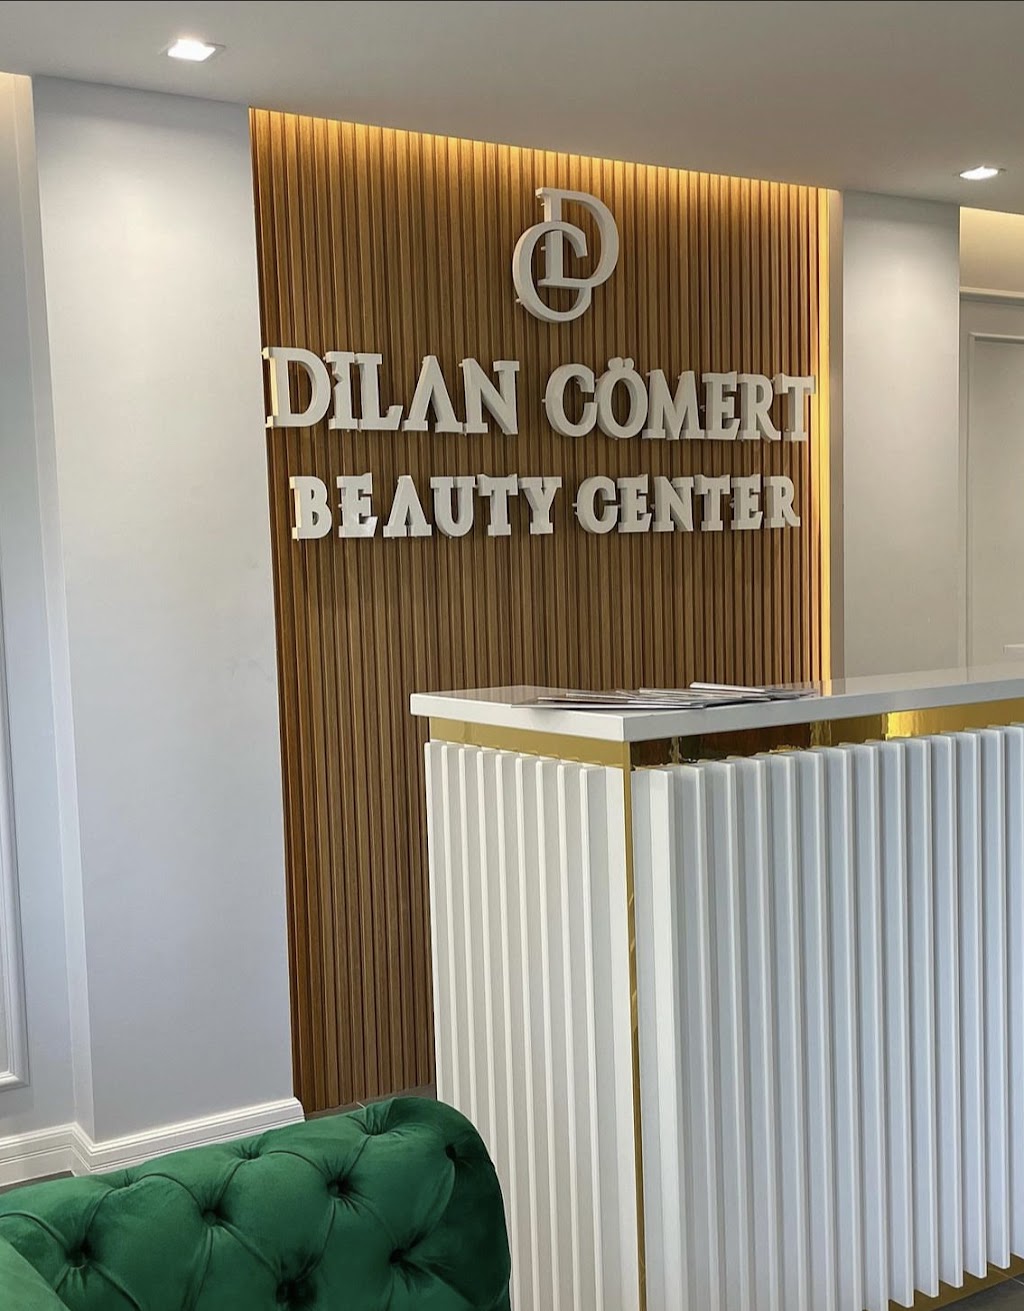 Dilan Cömert Beauty Center